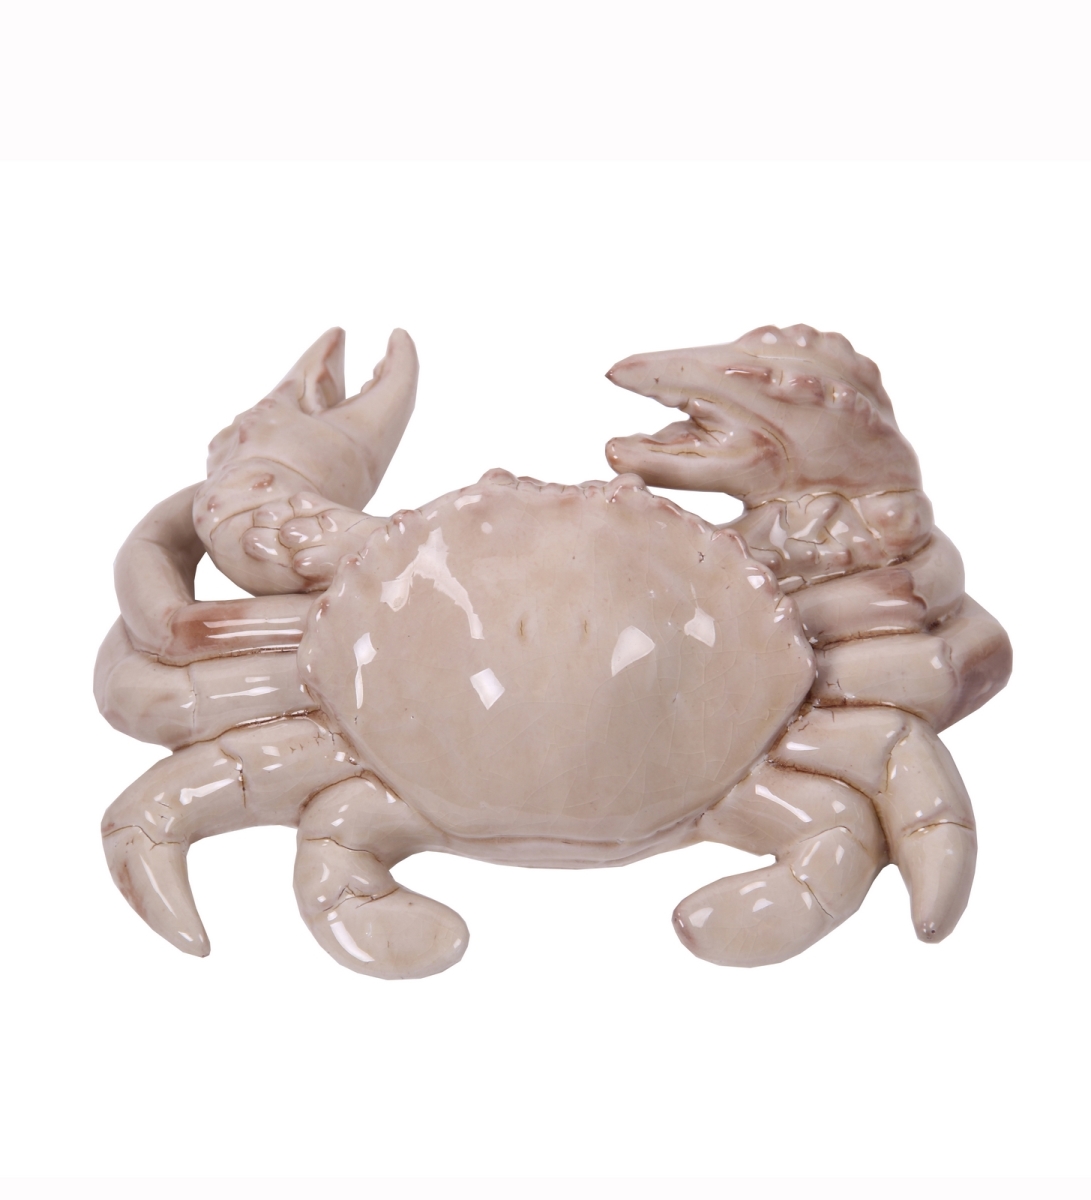 66756 11 X 9 X 4 In. Ceramic Crab, Cream